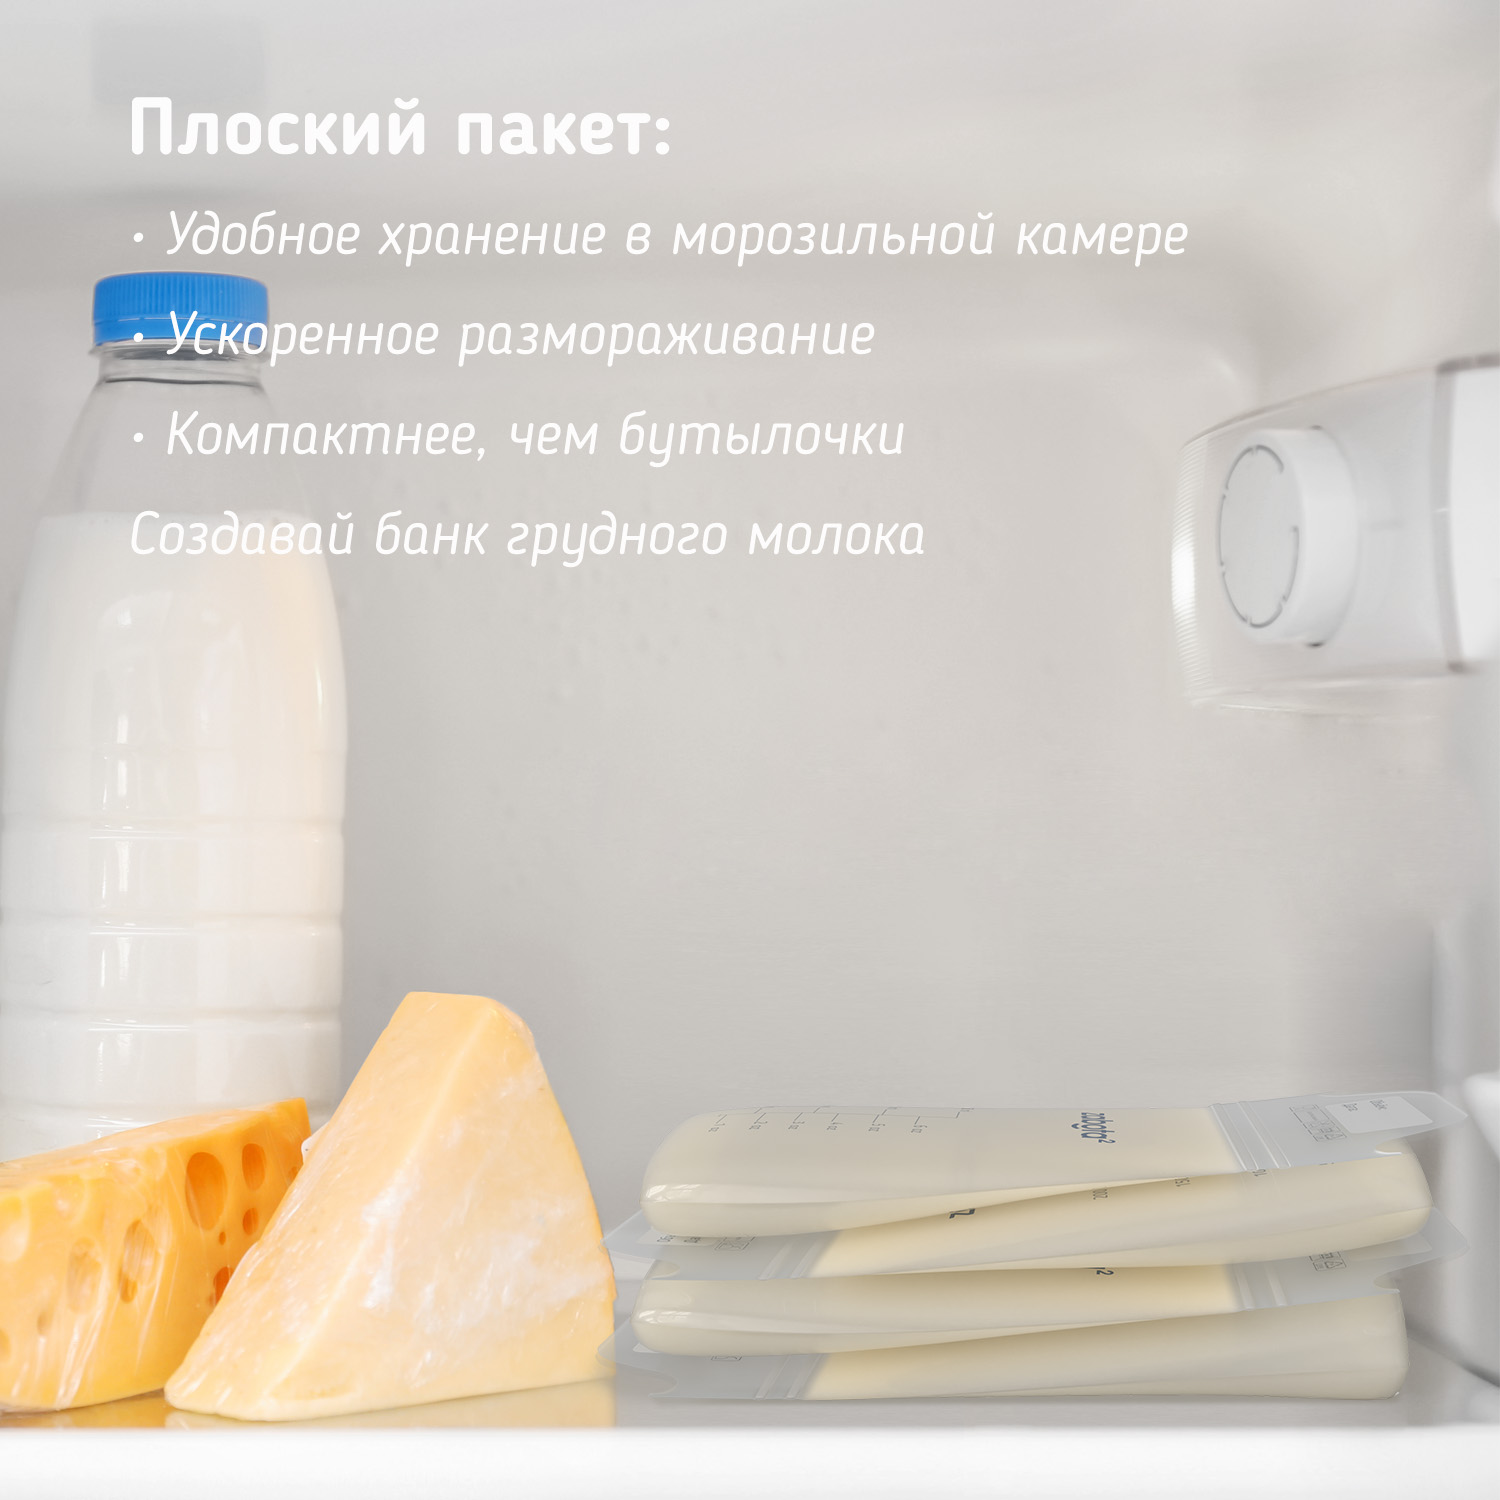 Пакеты для грудного молока Zabota2 200мл 15шт - фото 2